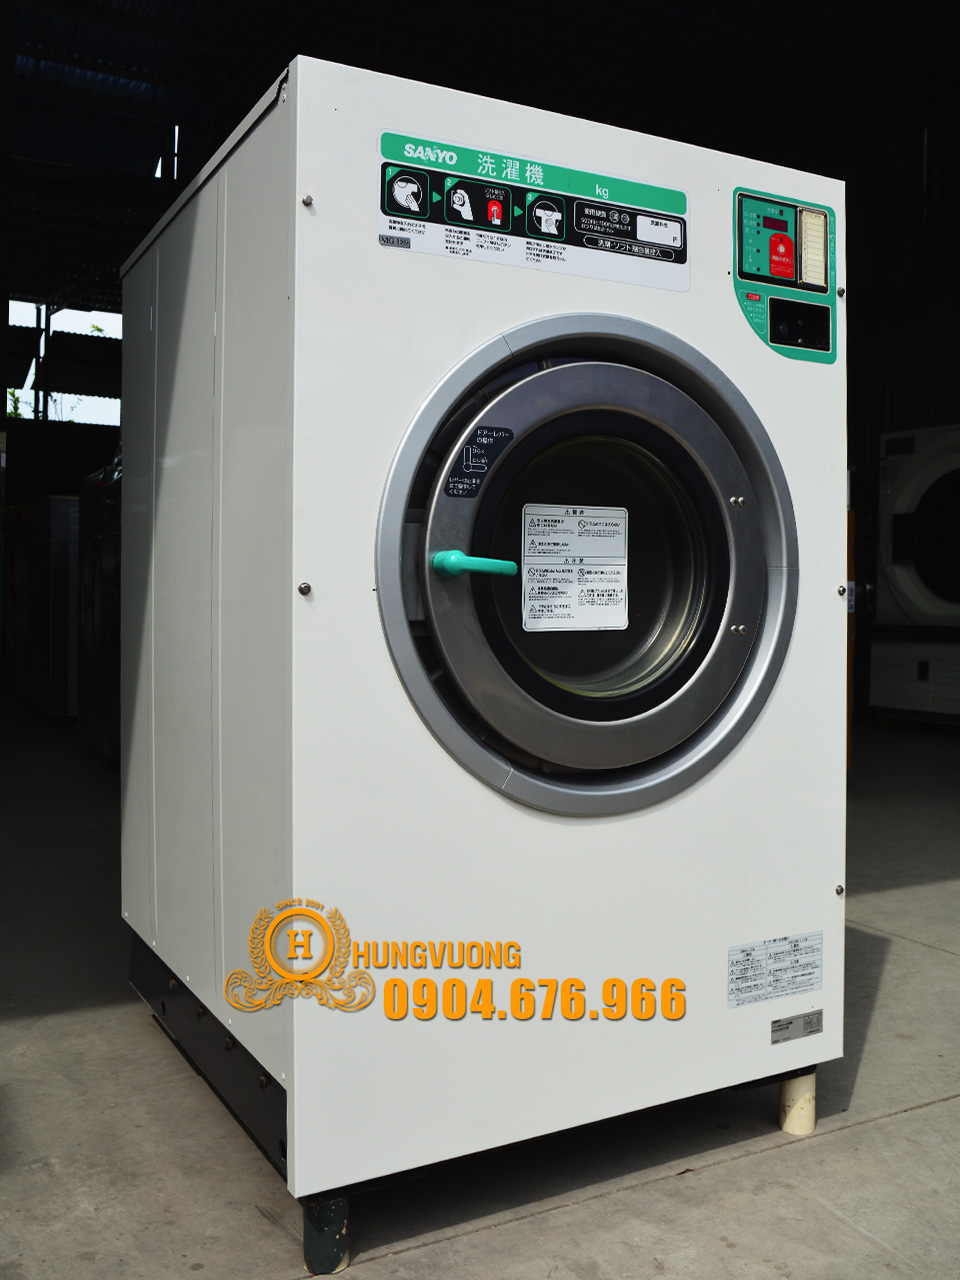 Mặt nghiêng máy giặt công nghiệp SANYO SCW 5301FC, 30kg, chân chống rung, biến tần, Nhật Bản